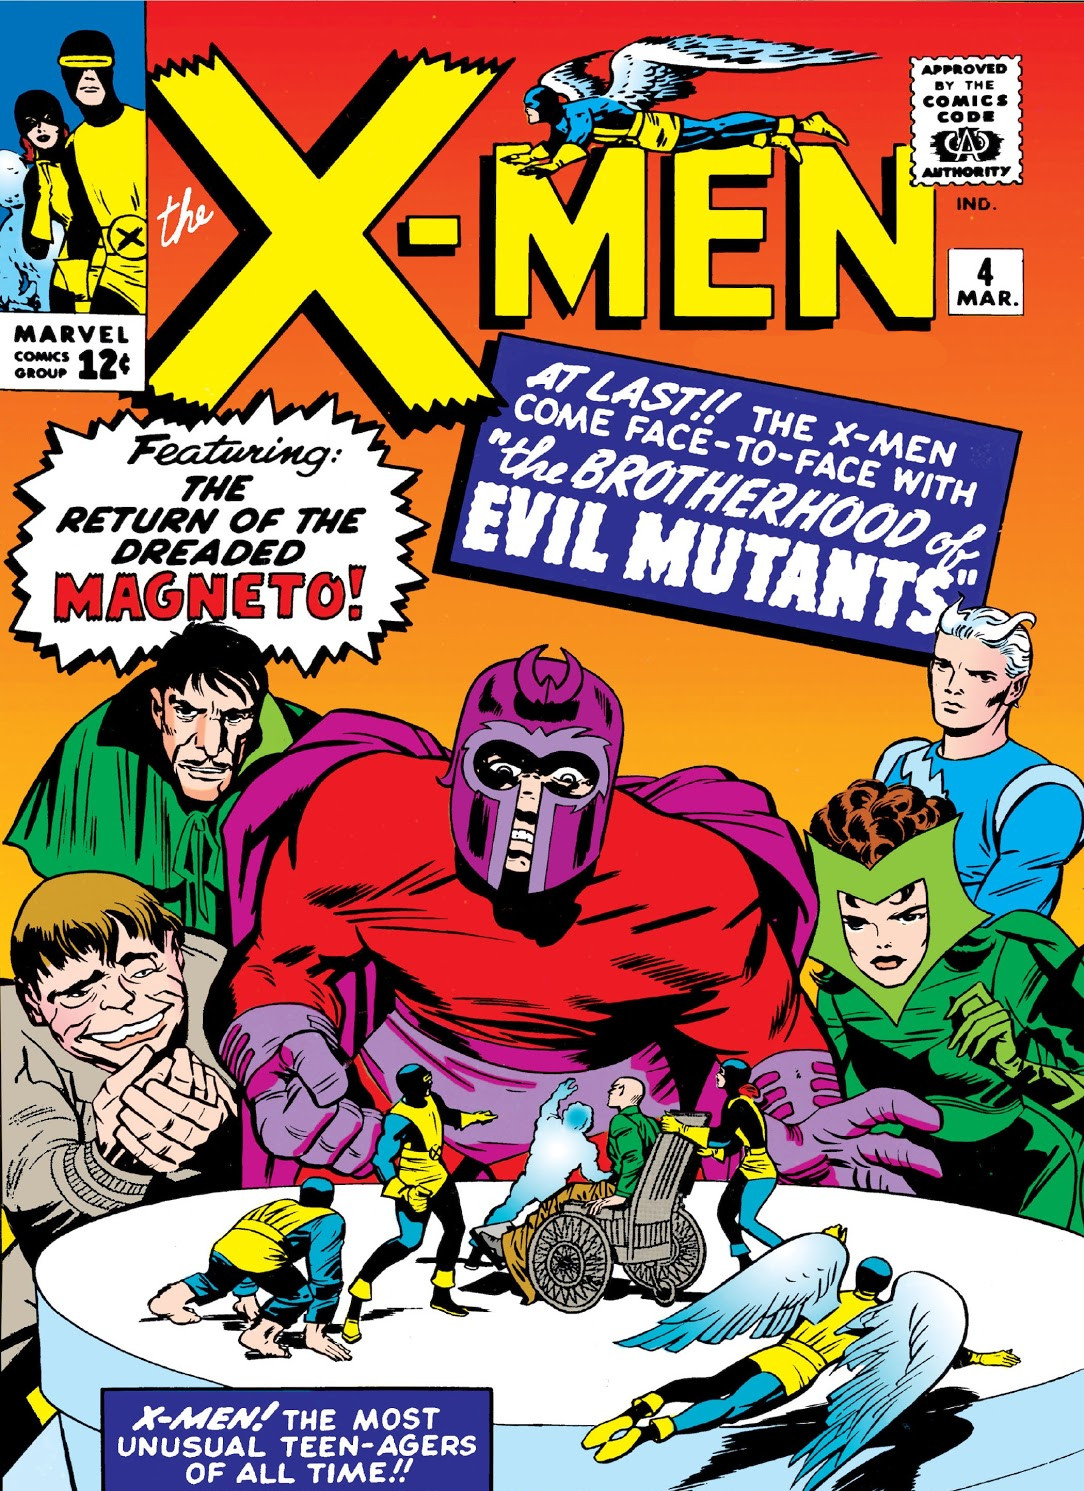 X-Men #4 (1964), con el debut de Scarlet Witch